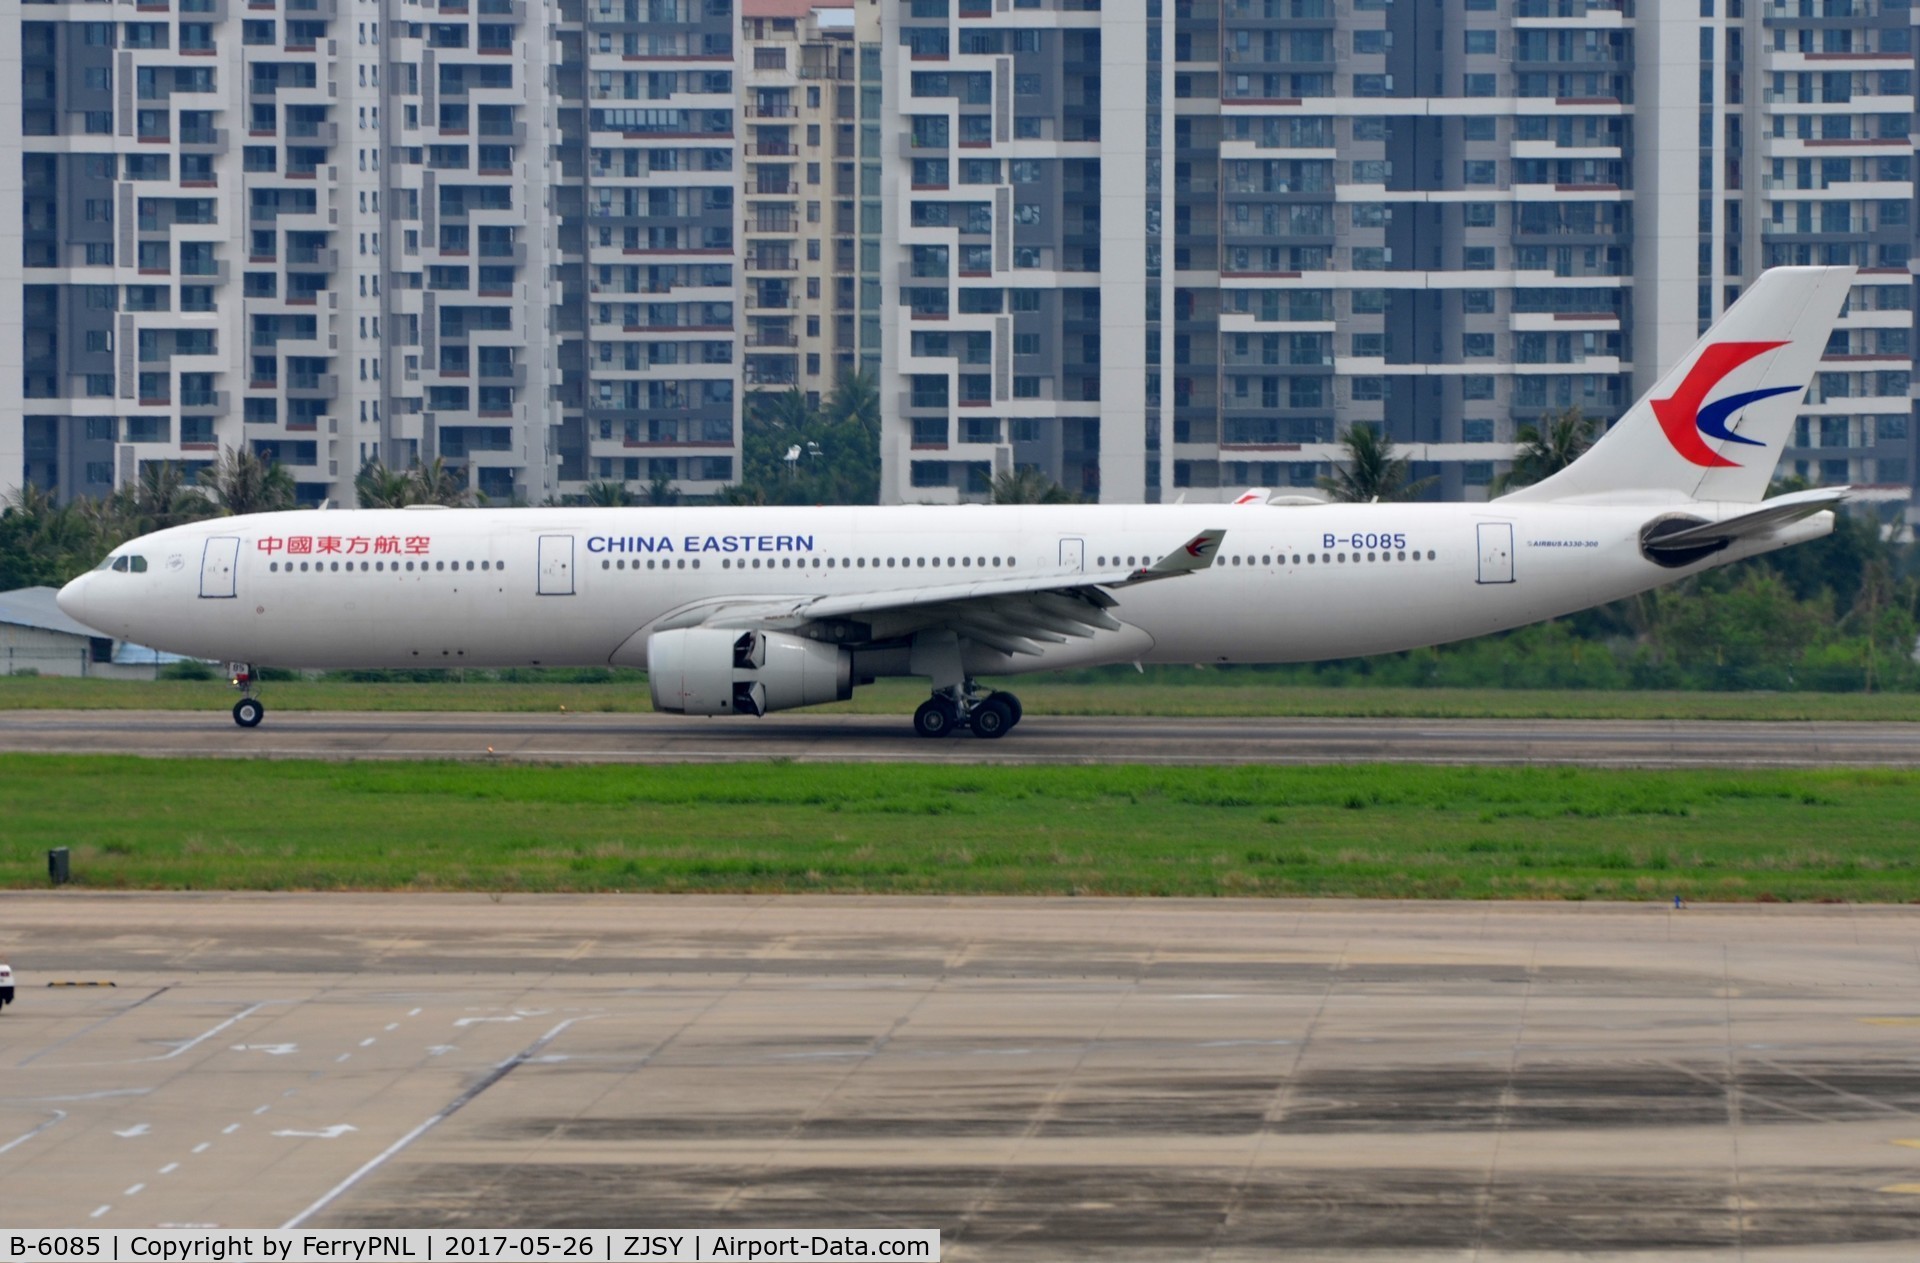 B-6085, 2007 Airbus A330-343X C/N 836, China Eastern A333 landing